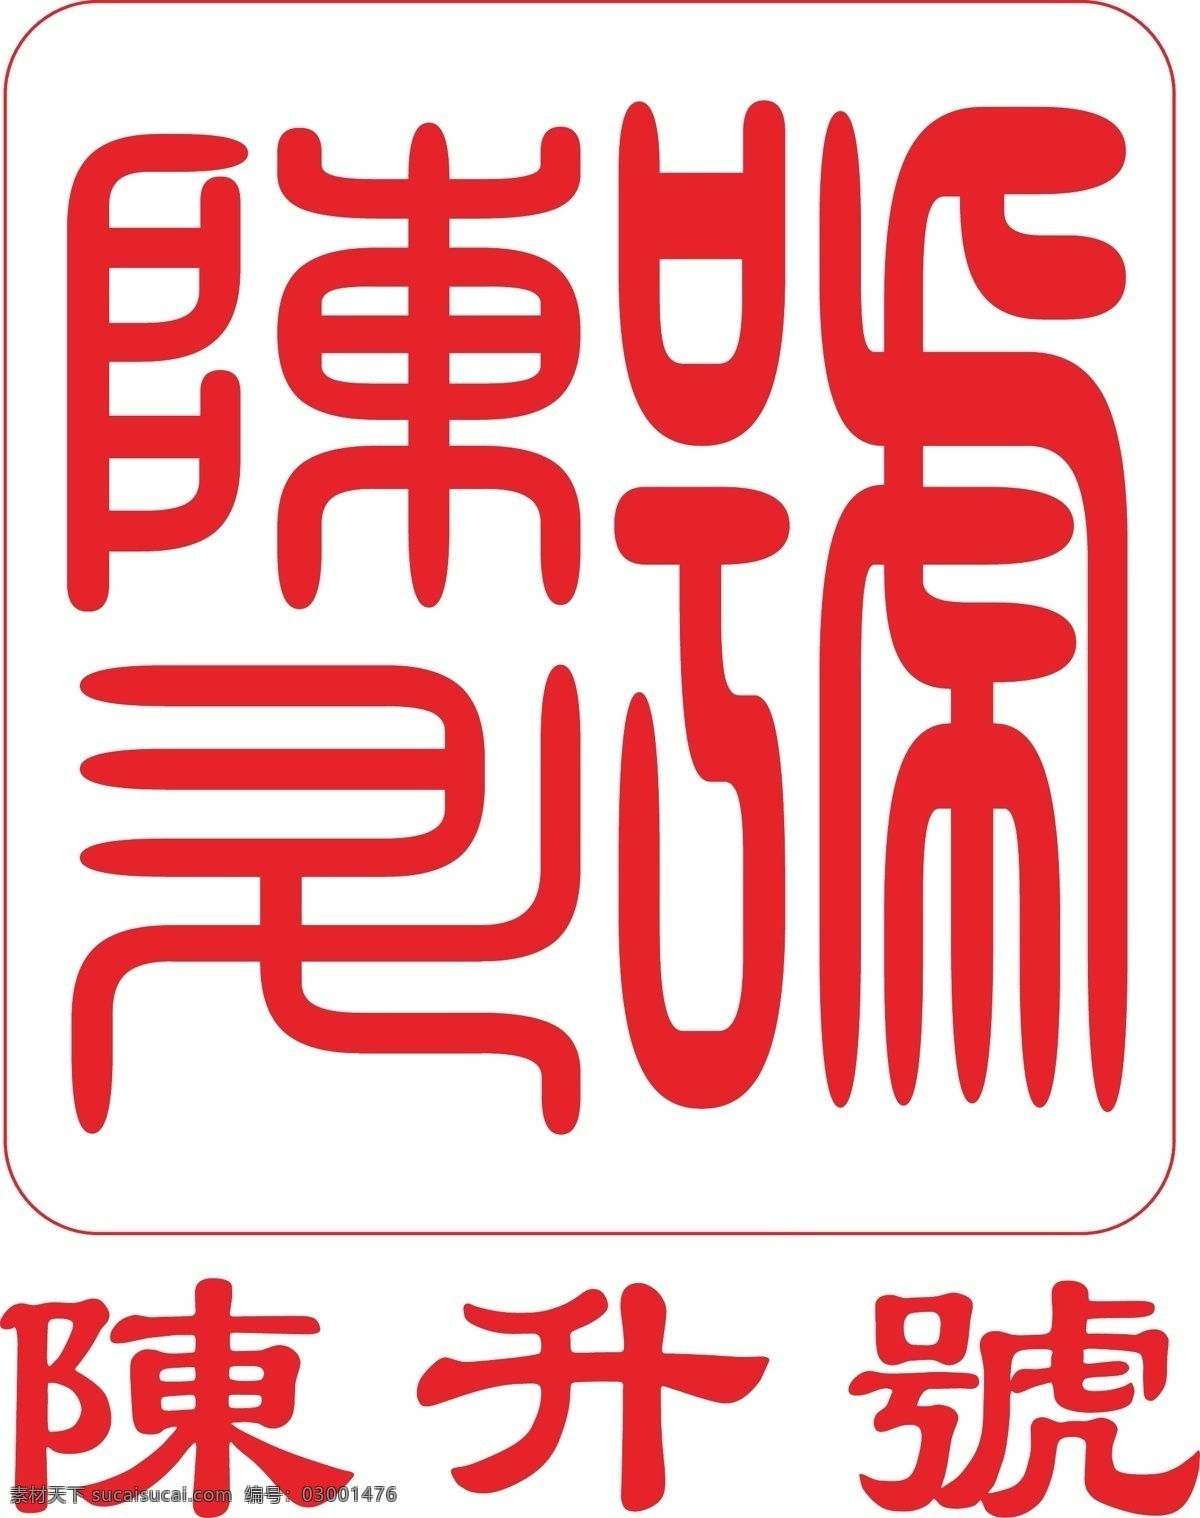 陈升号标志 茶叶标志 茶企标志 红色标志 矢量标志 vi标志 方型标志 老字号 茶叶logo 标志 logo设计